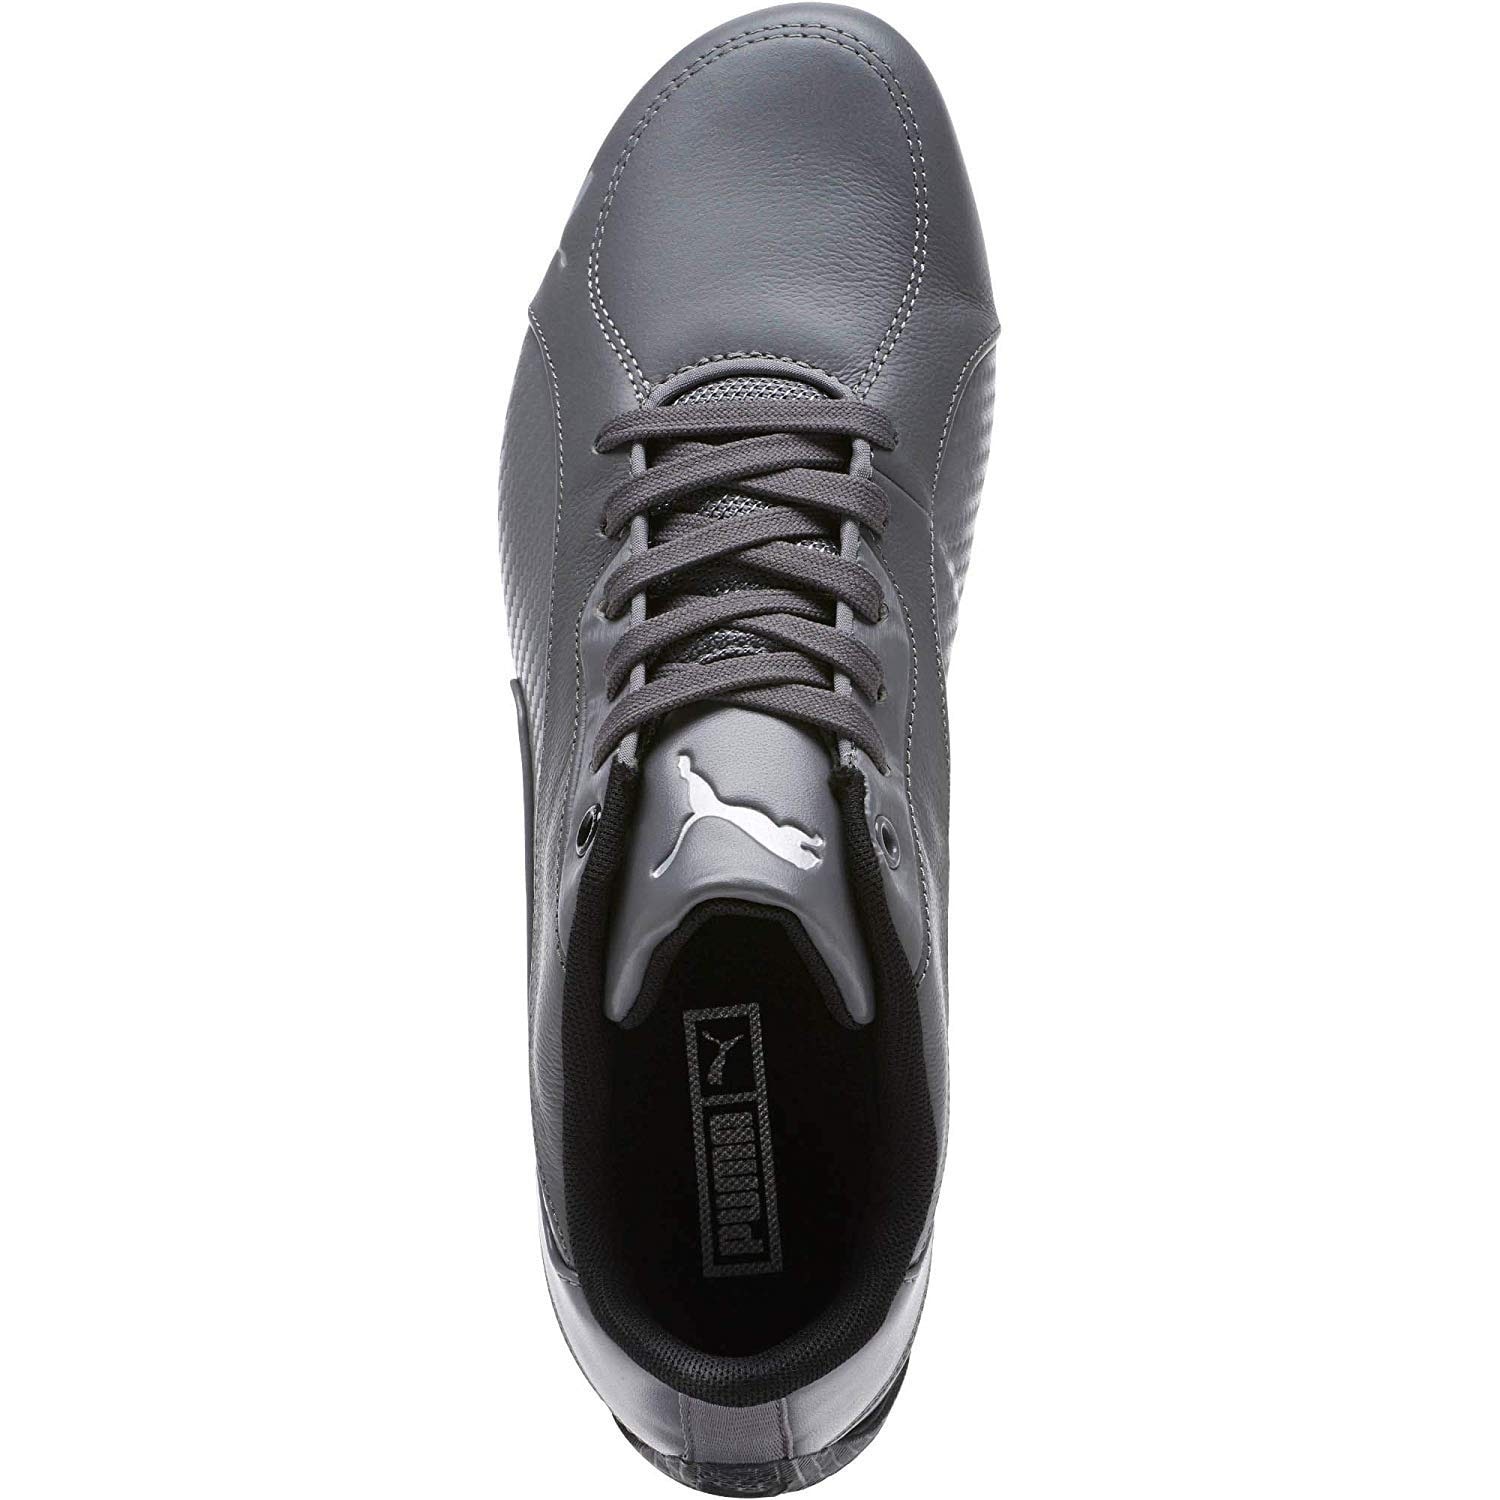 puma men's drift cat 5 carbon leather sneakers